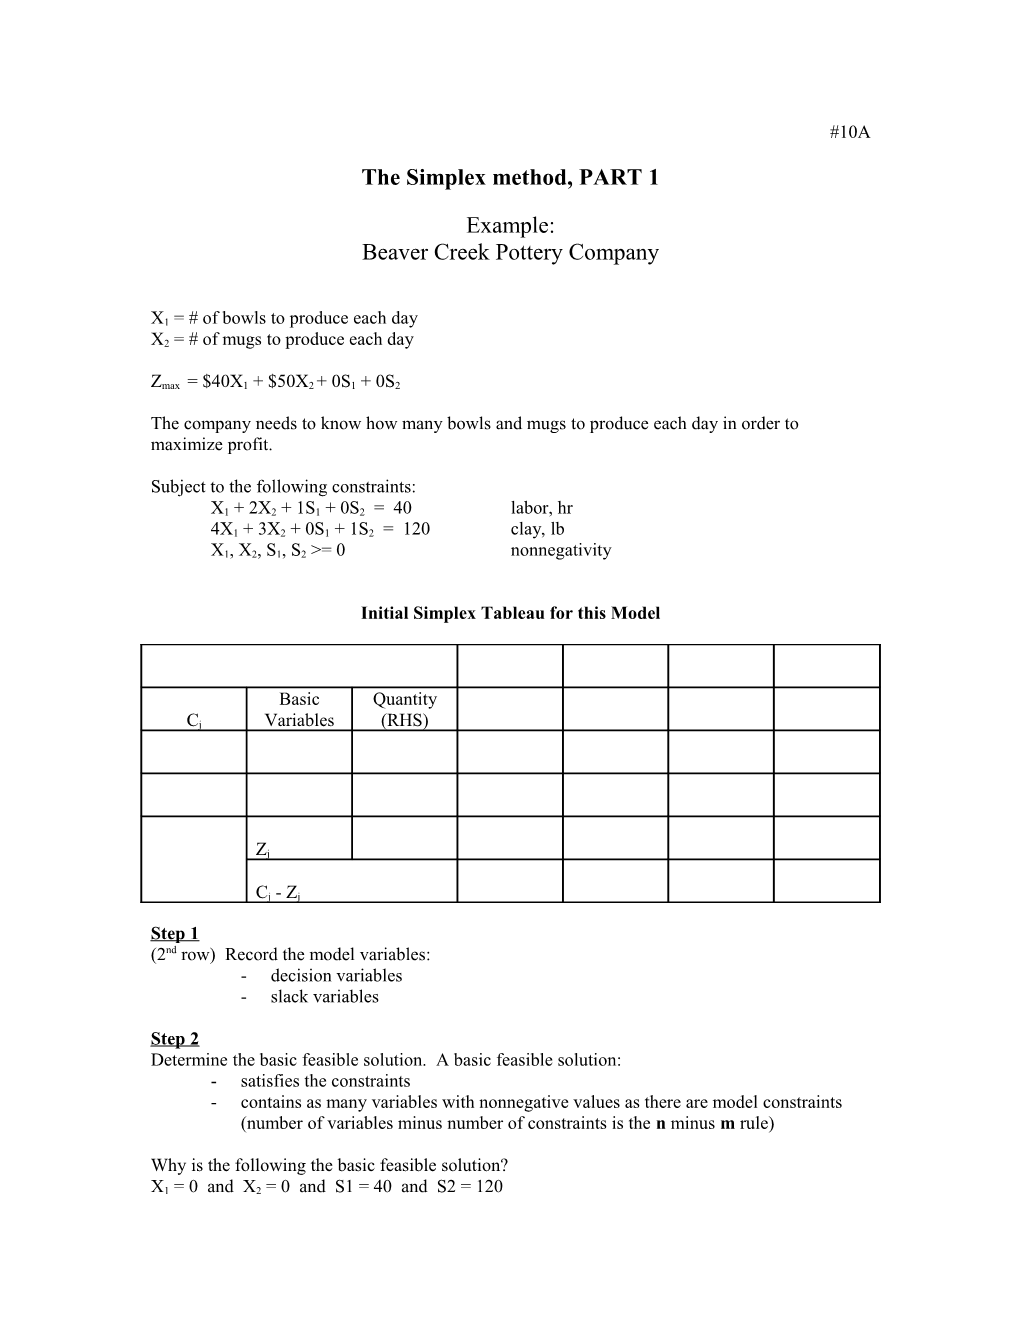 The Simplex Method, PART 1